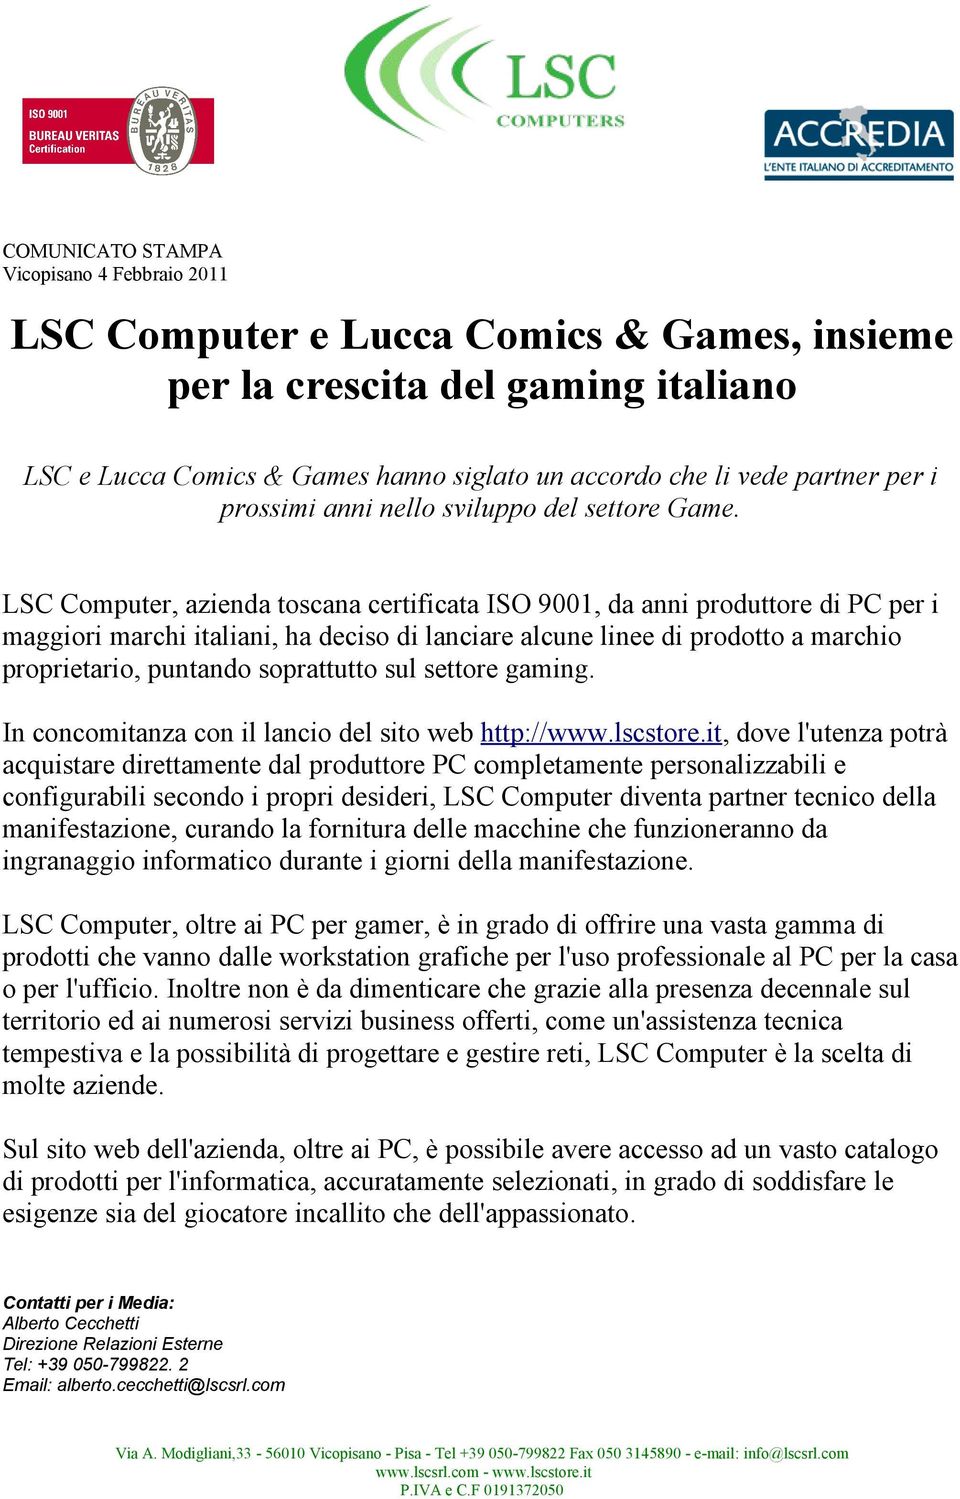 LSC Computer, azienda toscana certificata ISO 9001, da anni produttore di PC per i maggiori marchi italiani, ha deciso di lanciare alcune linee di prodotto a marchio proprietario, puntando